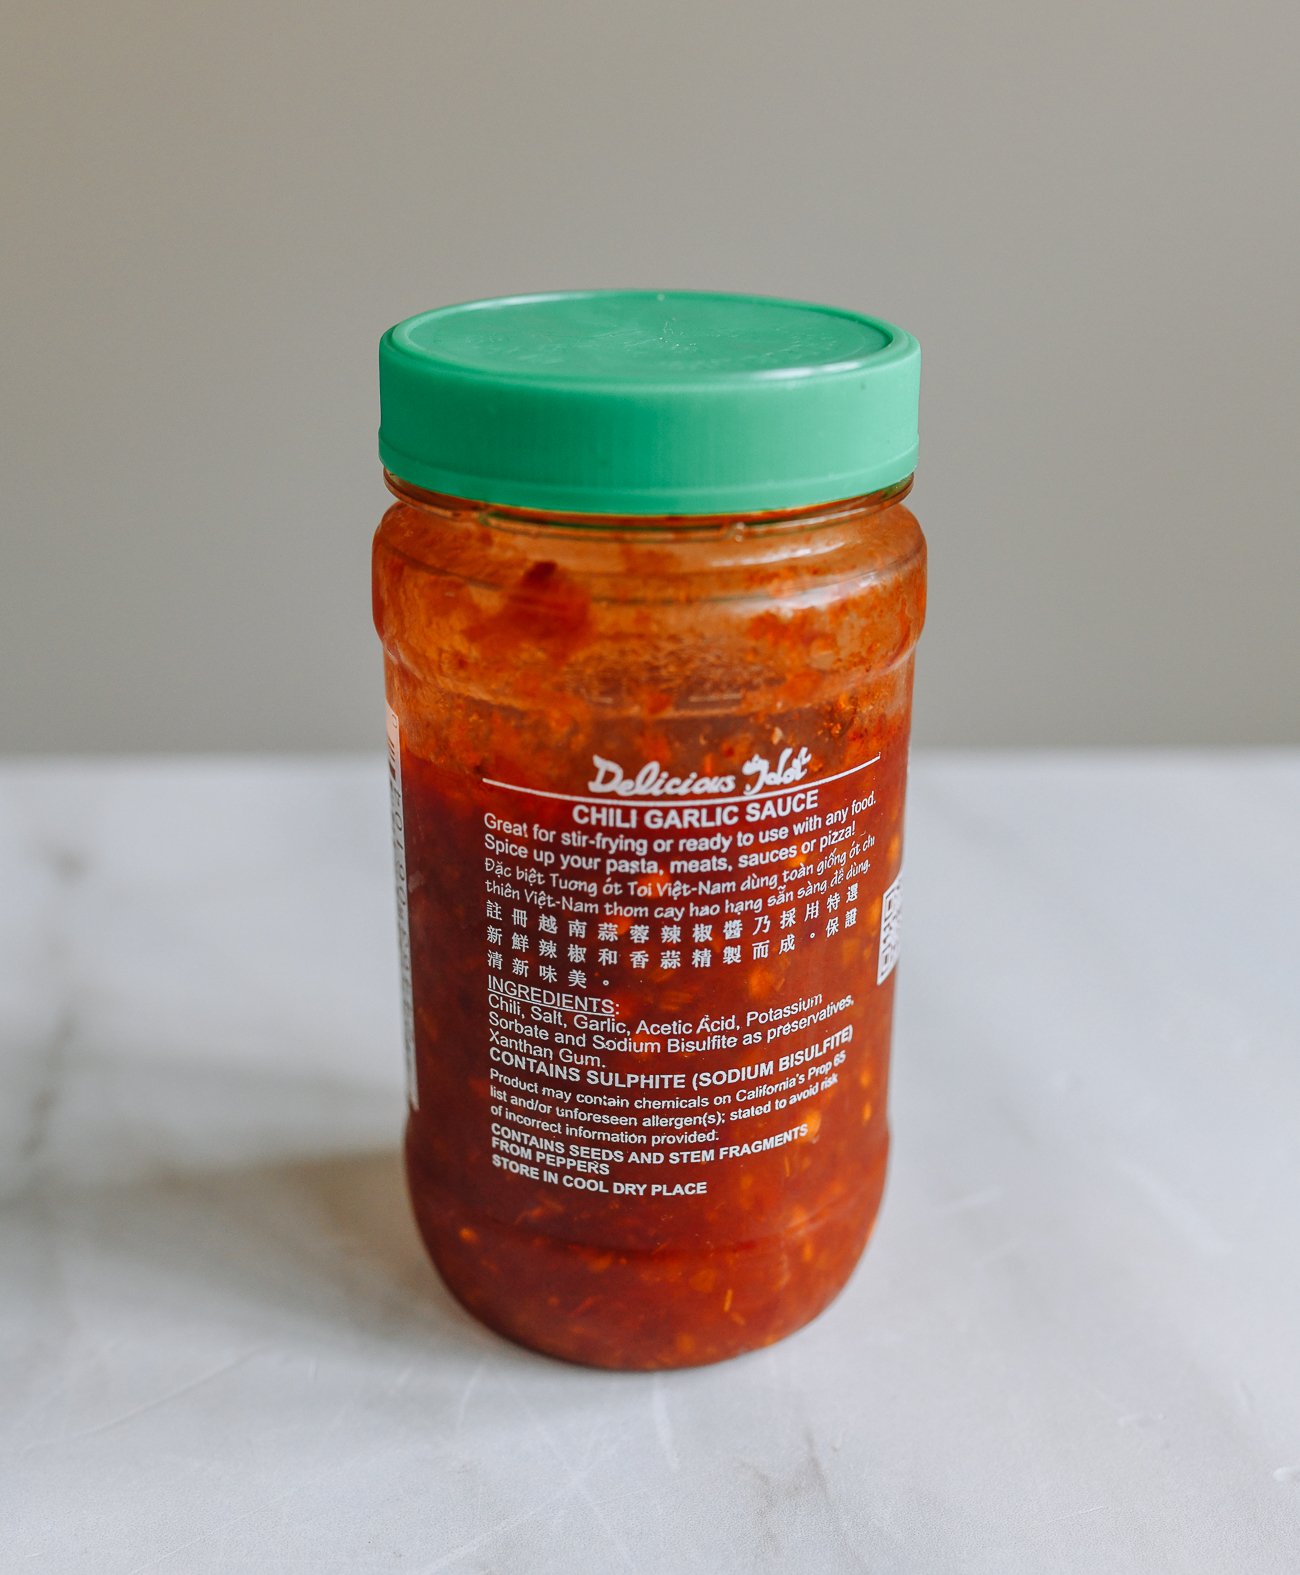 chili garlic sauce ingredients